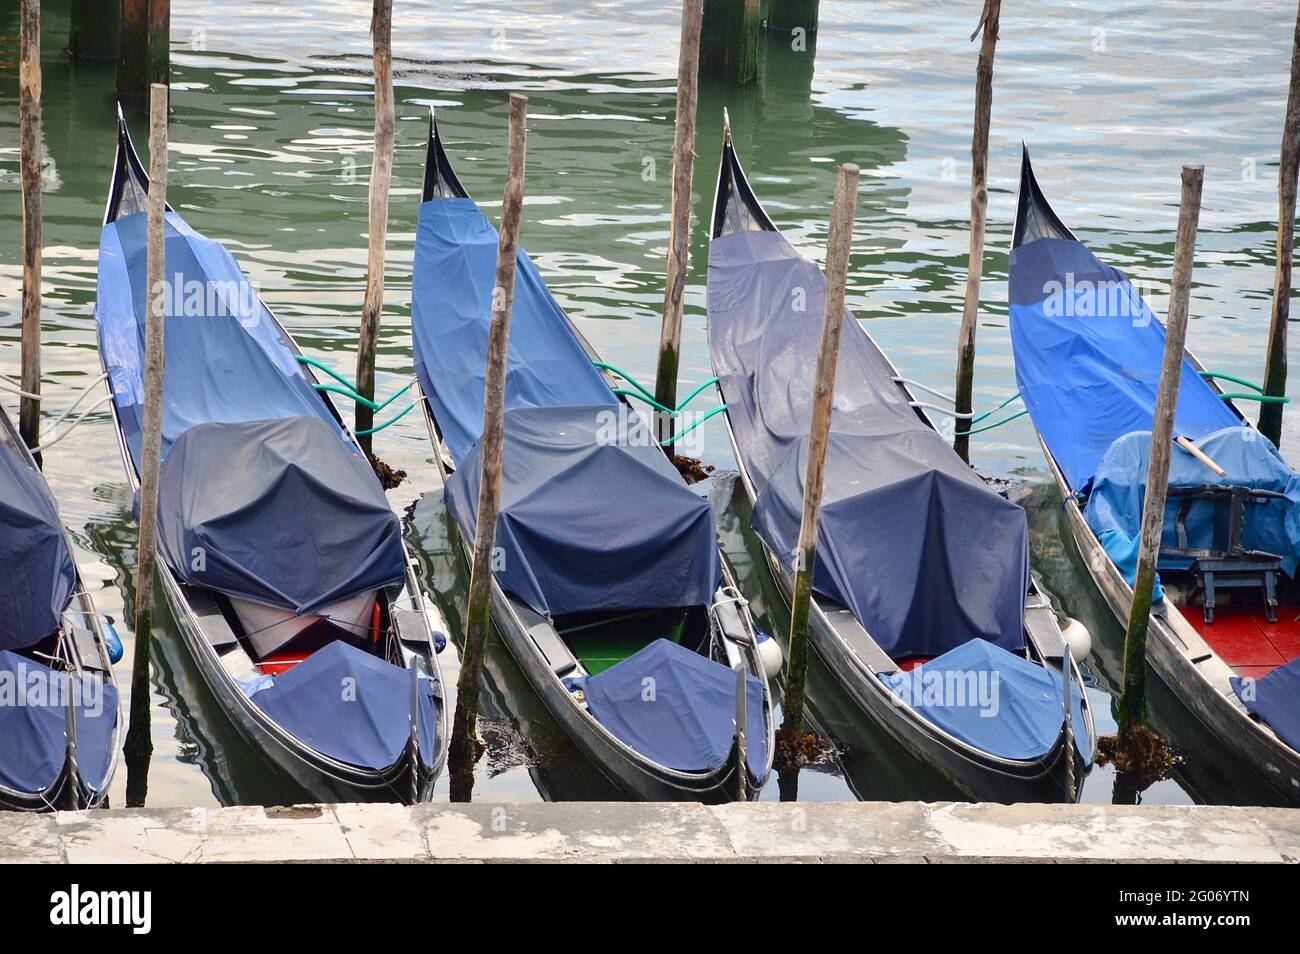 Venezianische Gondeln ruhen aufgrund des Touristenmangels, sind vereinsamt und abgedeckt Stock Photo